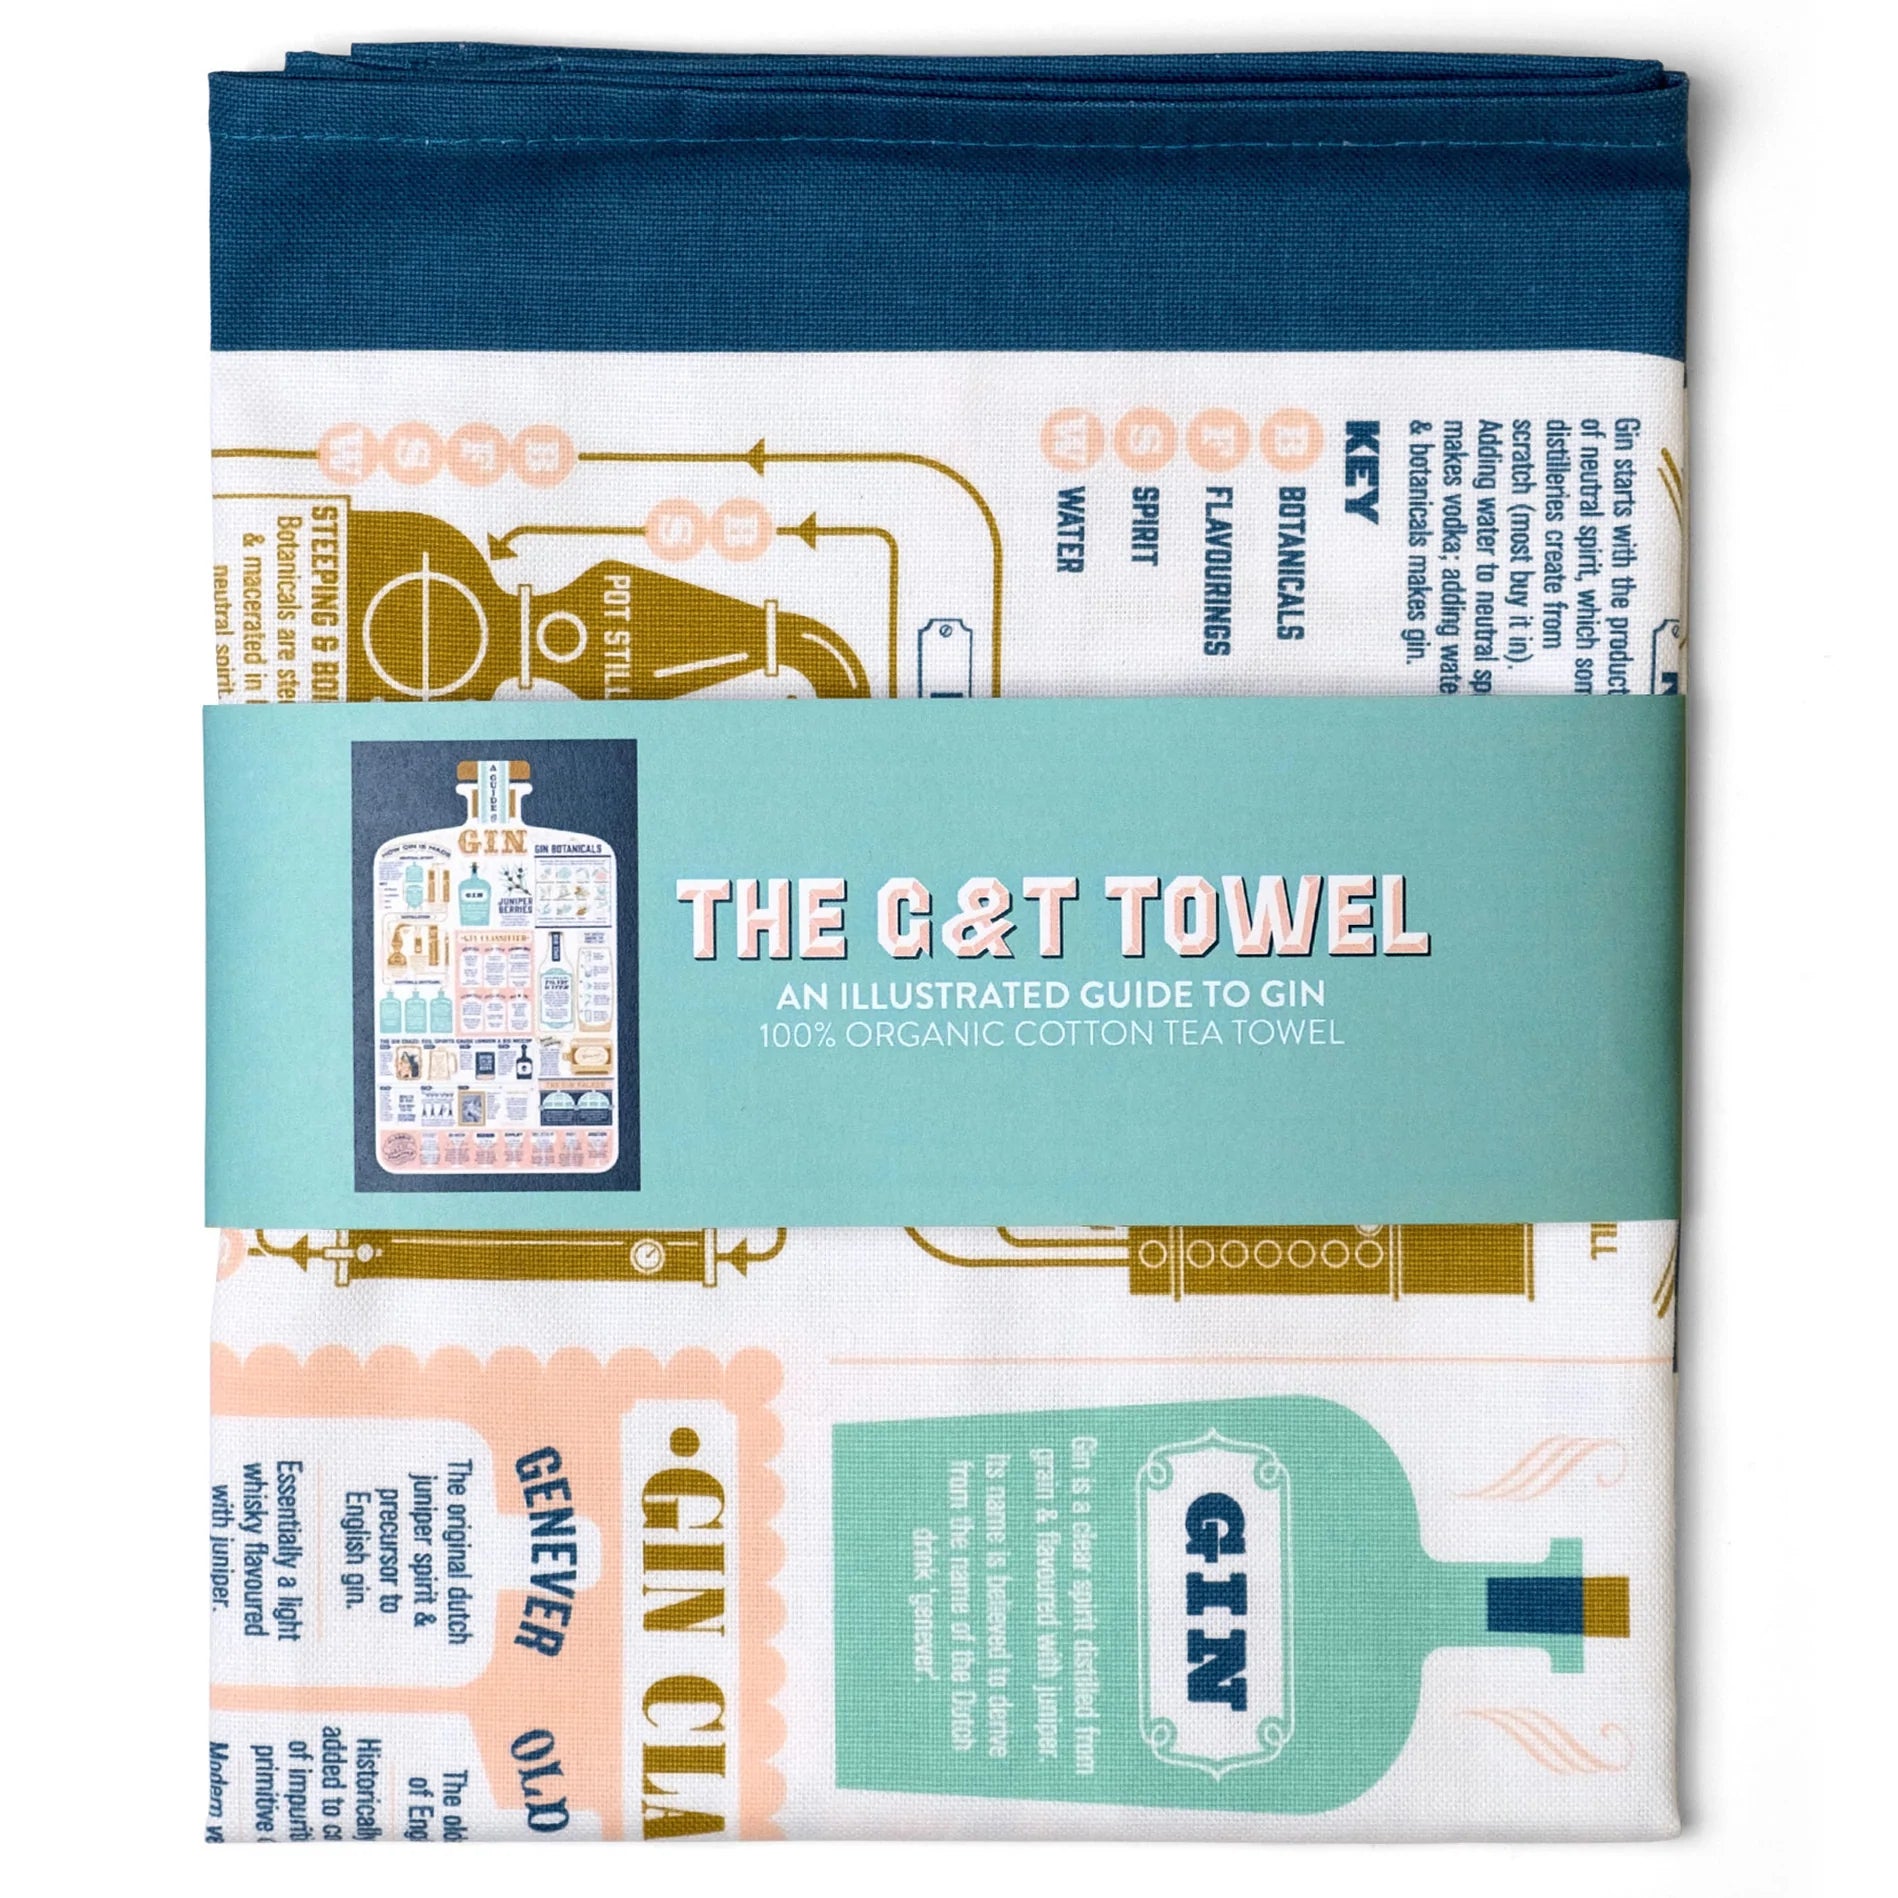 The G&T Tea Towel in packaging